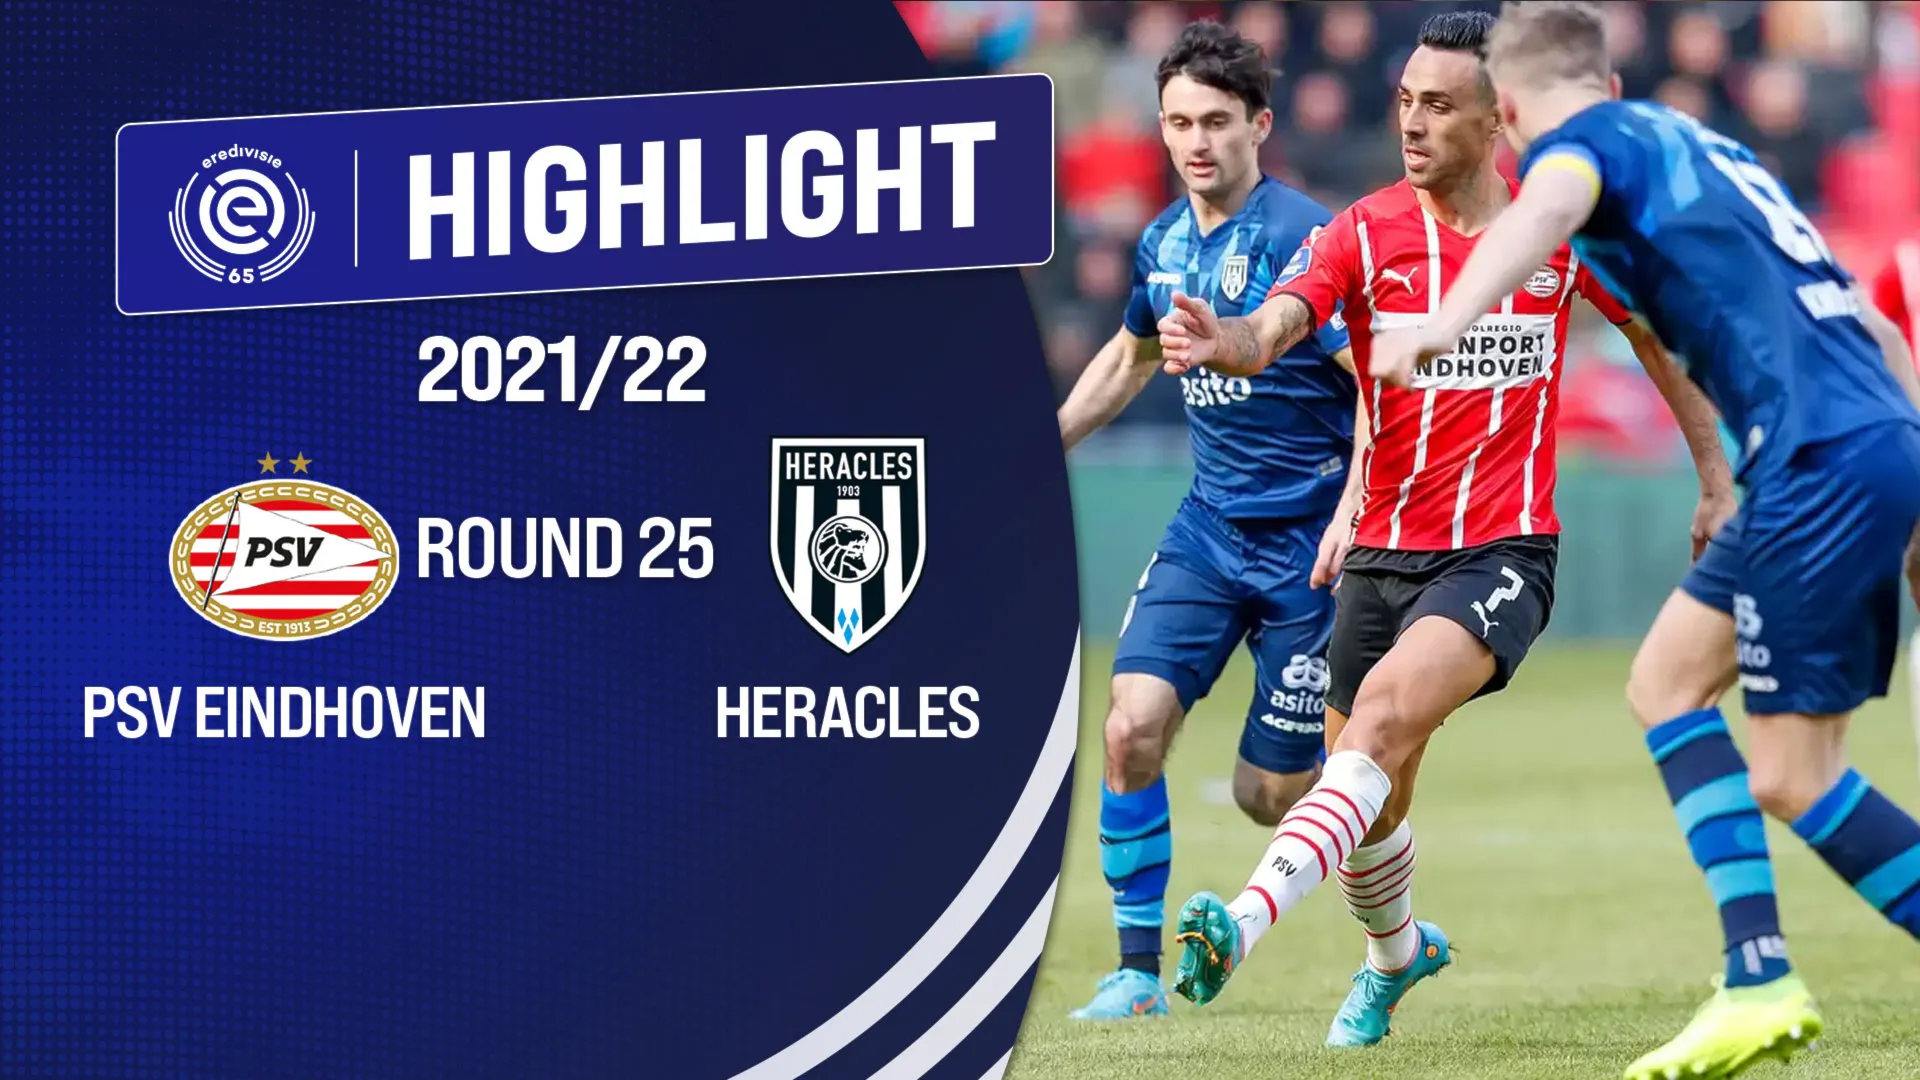 Highlights PSV Eindhoven vs Heracles (Vòng 25 - Giải VĐQG Hà Lan 2021/22)